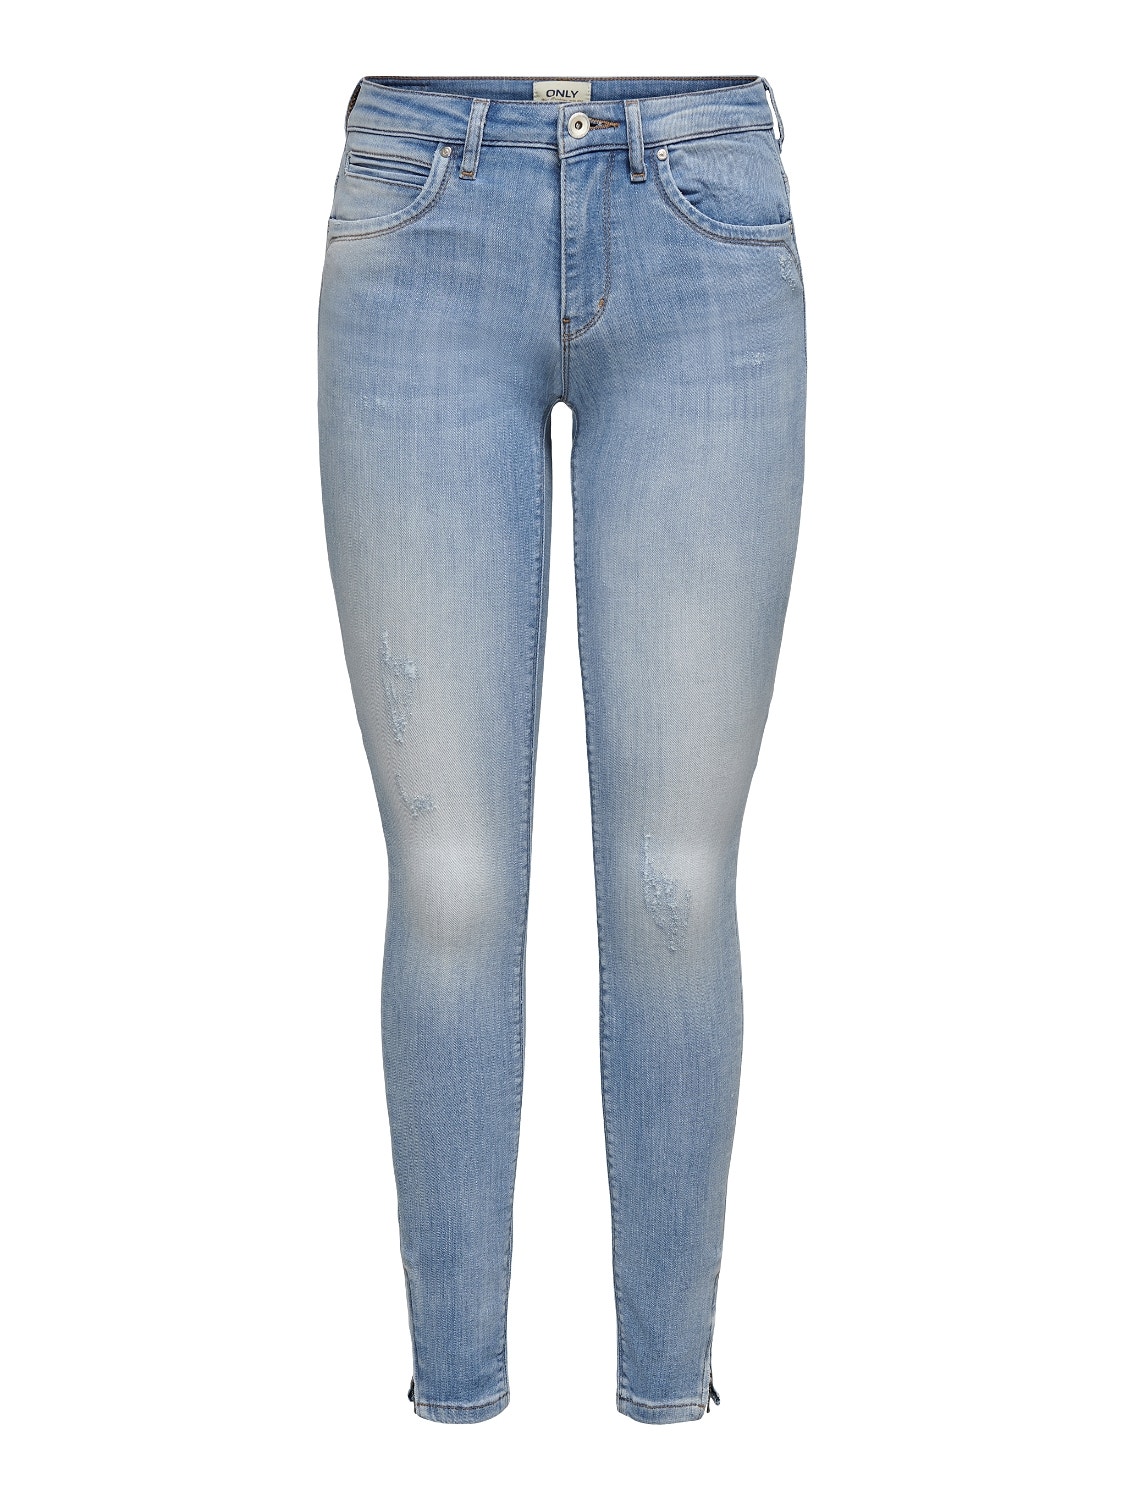 ONLY Skinny Fit Jeans -Light Blue Denim - 15170824